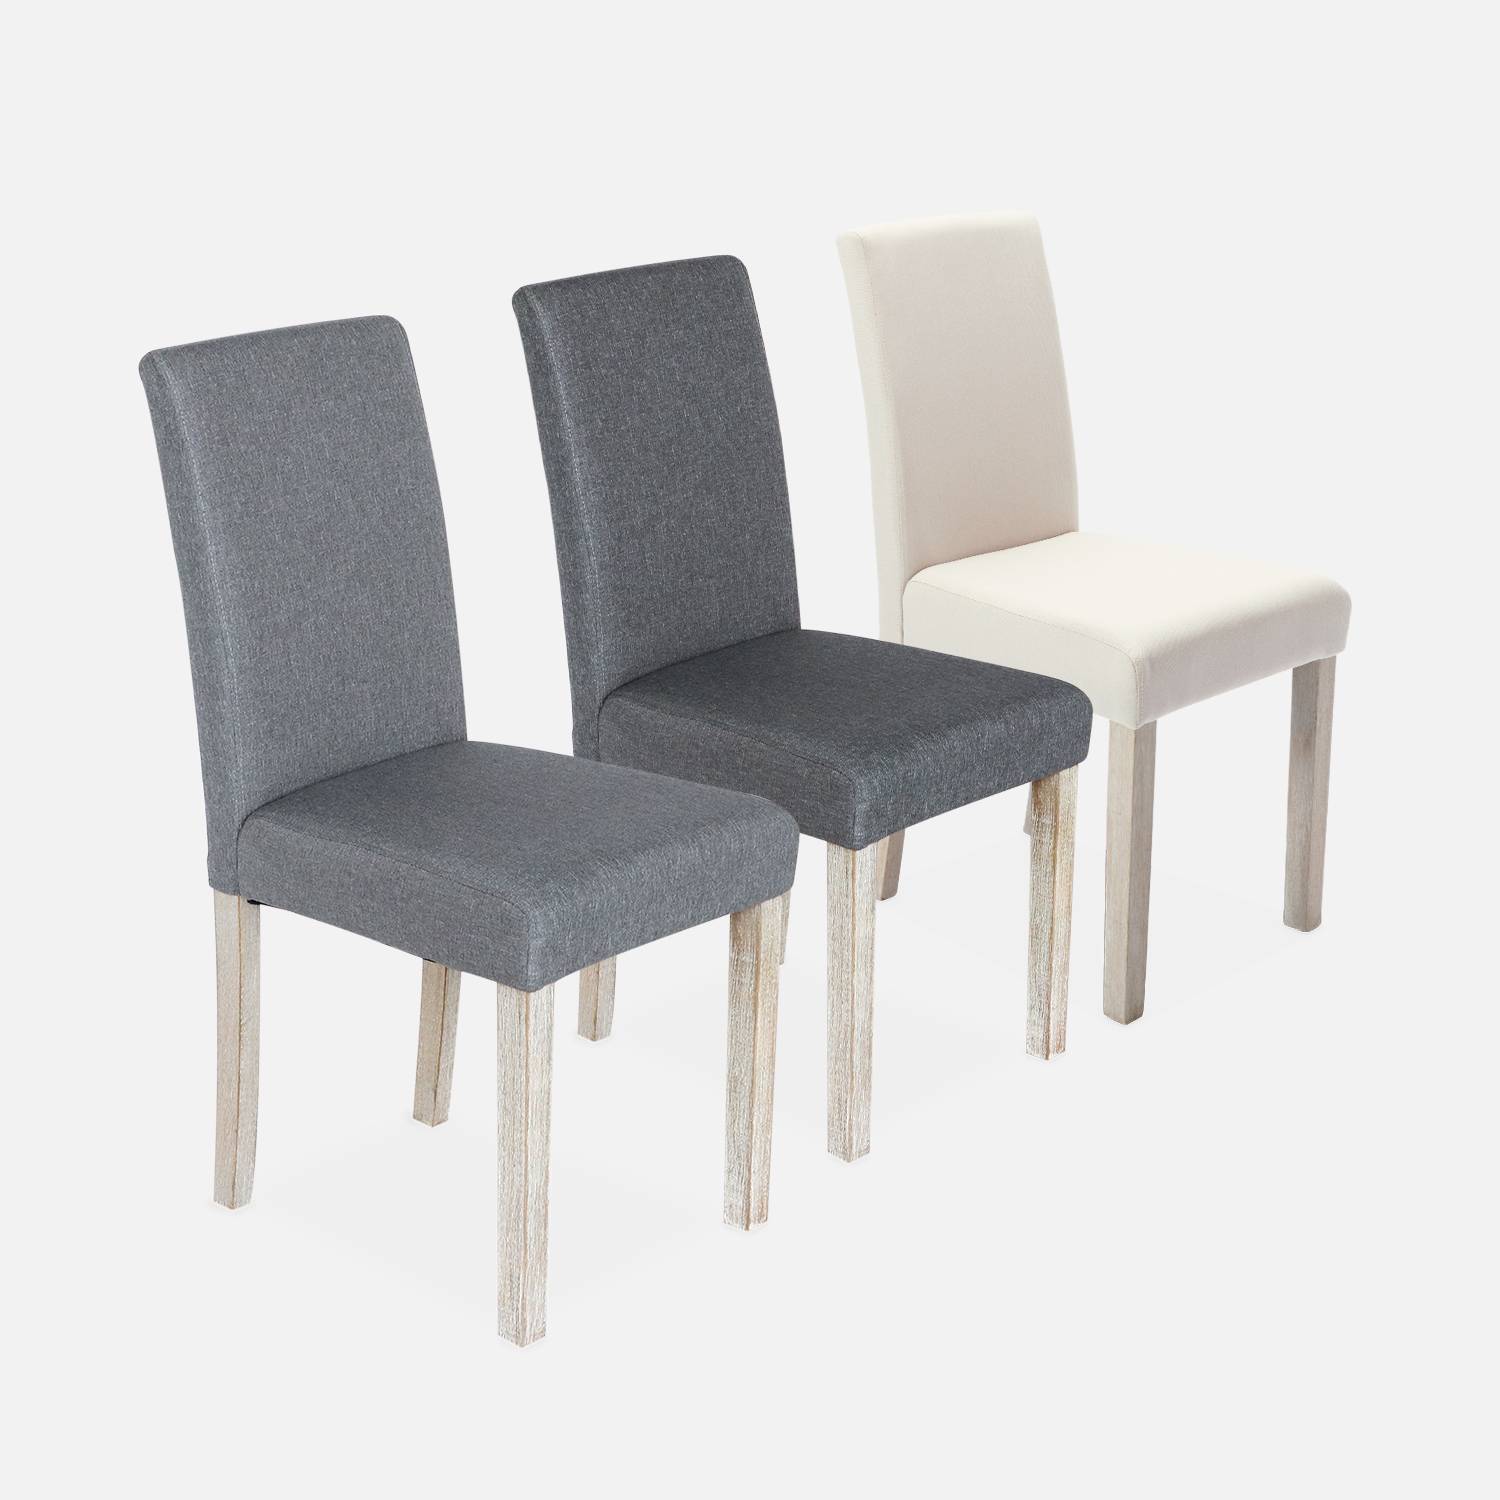 Conjunto de 4 sillas - Rita - sillas de tela, patas madera lacada  Photo5